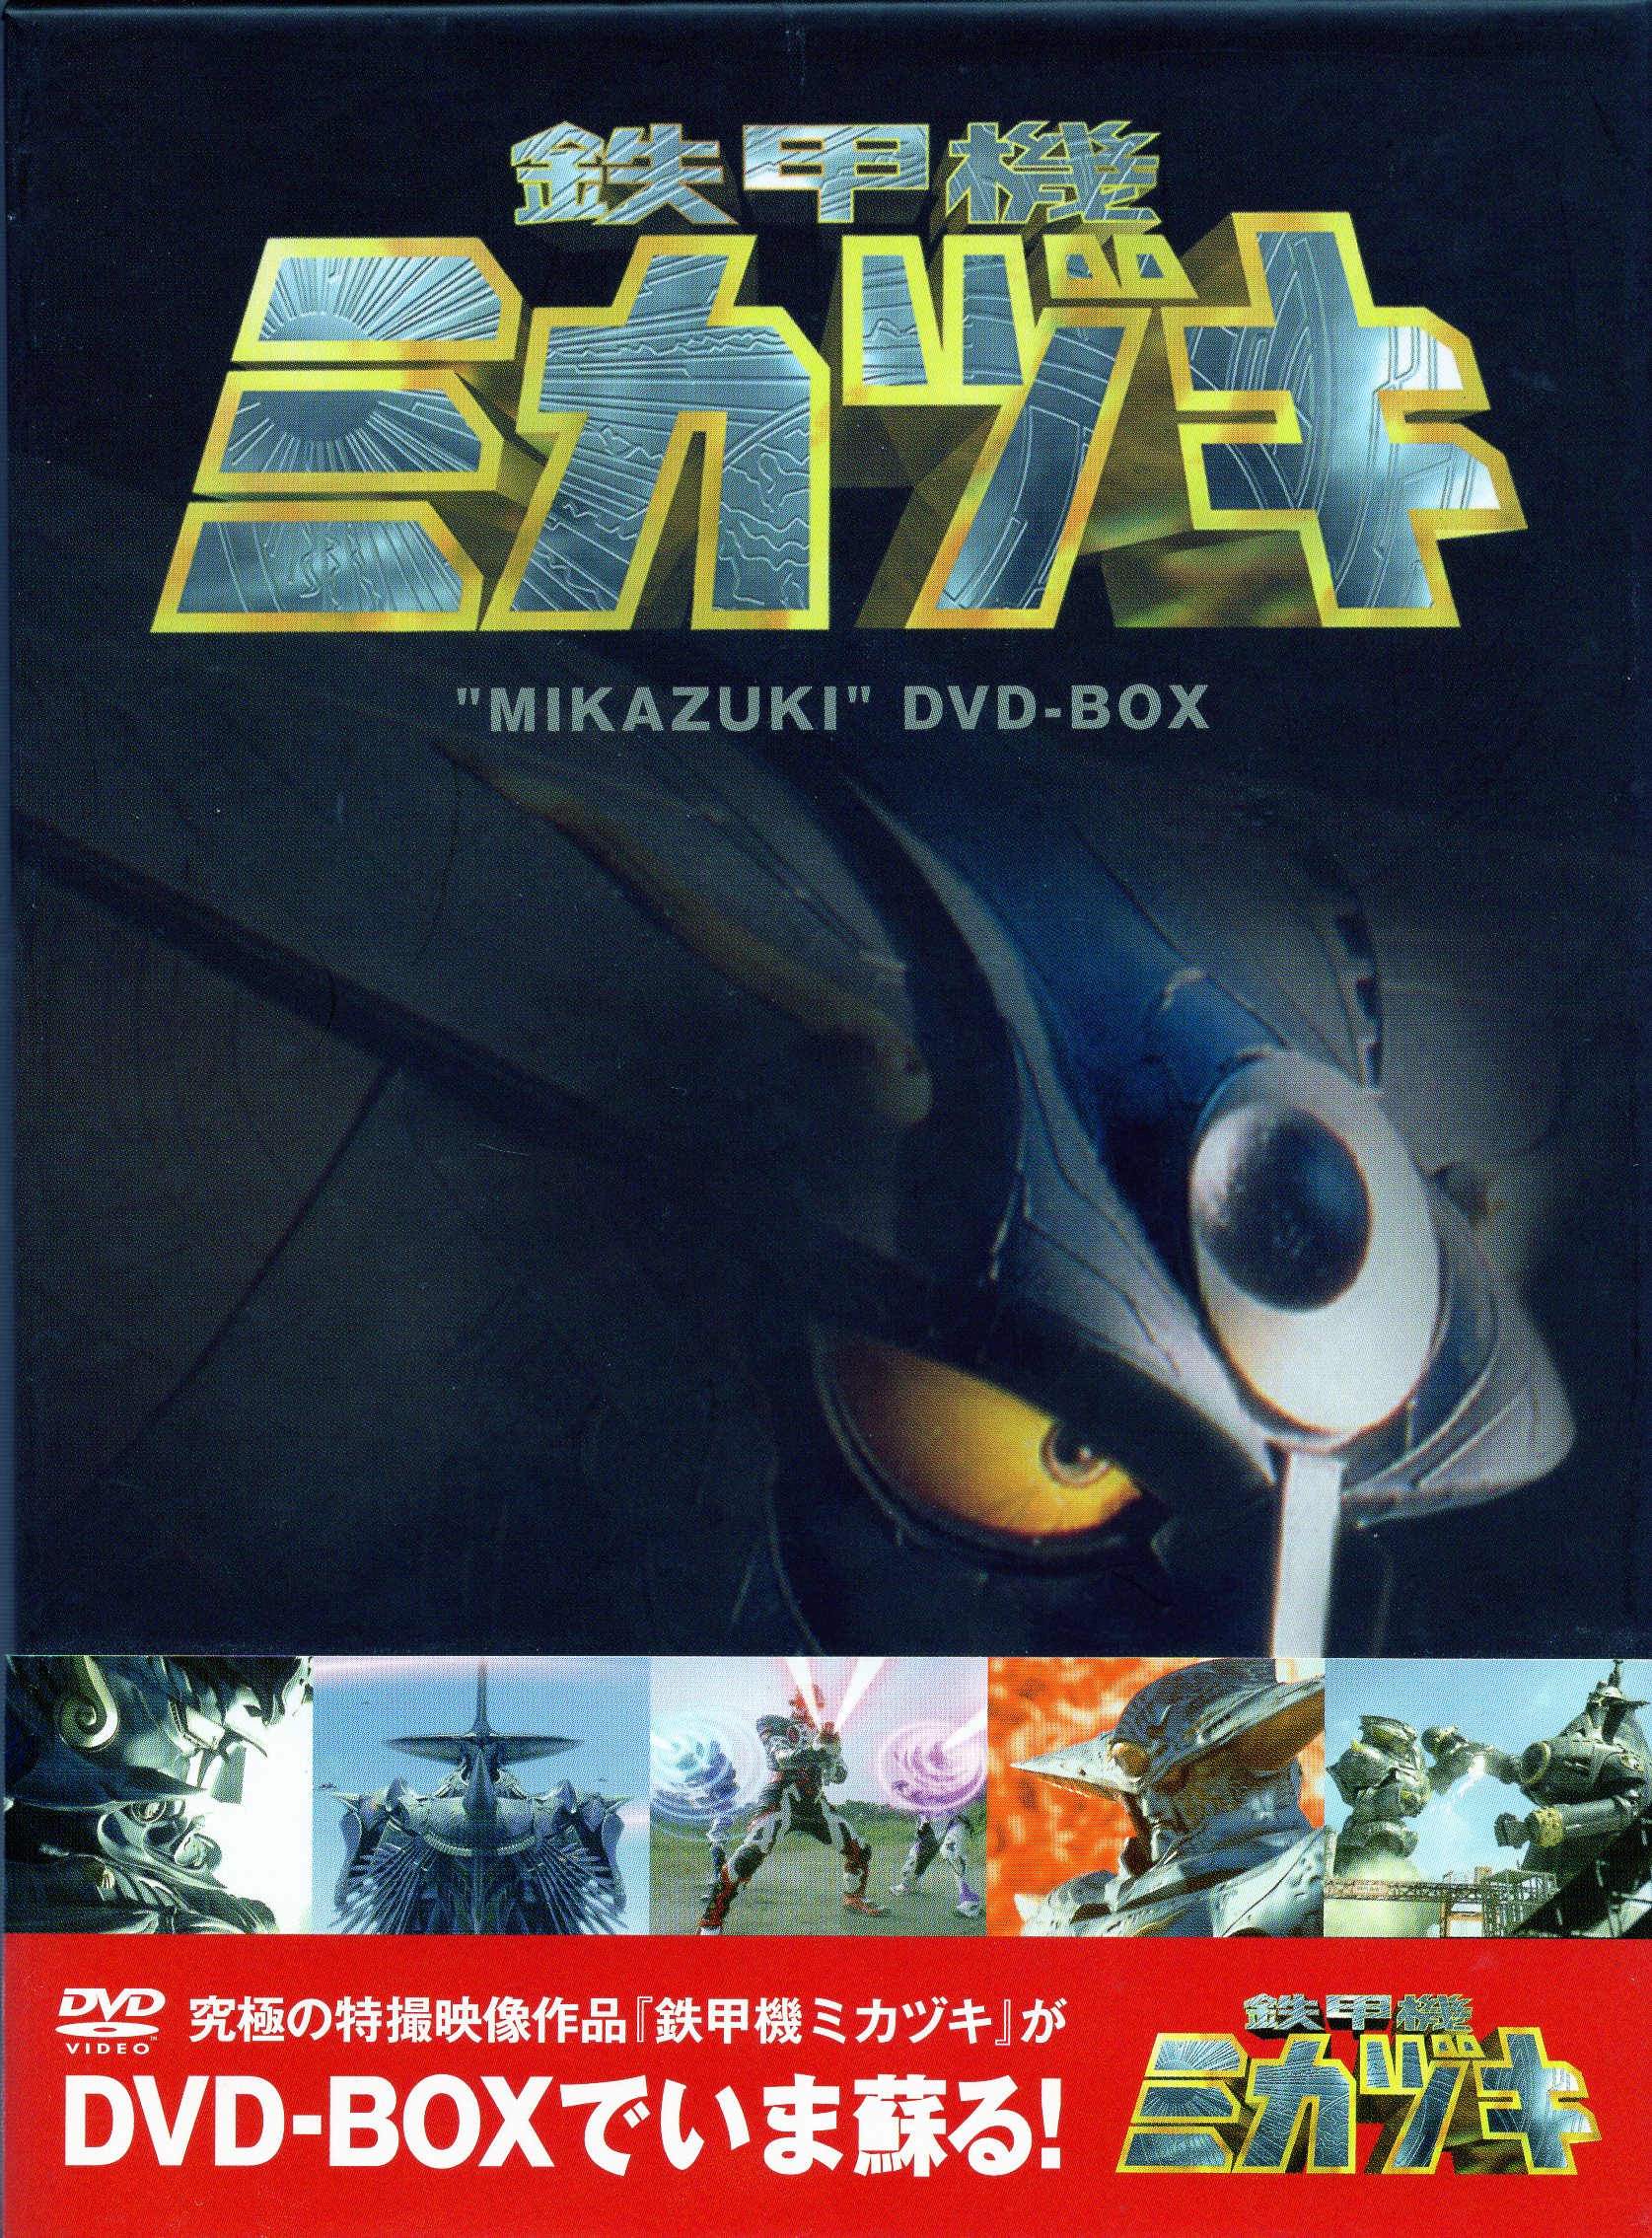 メディアファクトリー 特撮DVD 廉価)鉄甲機ミカヅキDVD-BOX